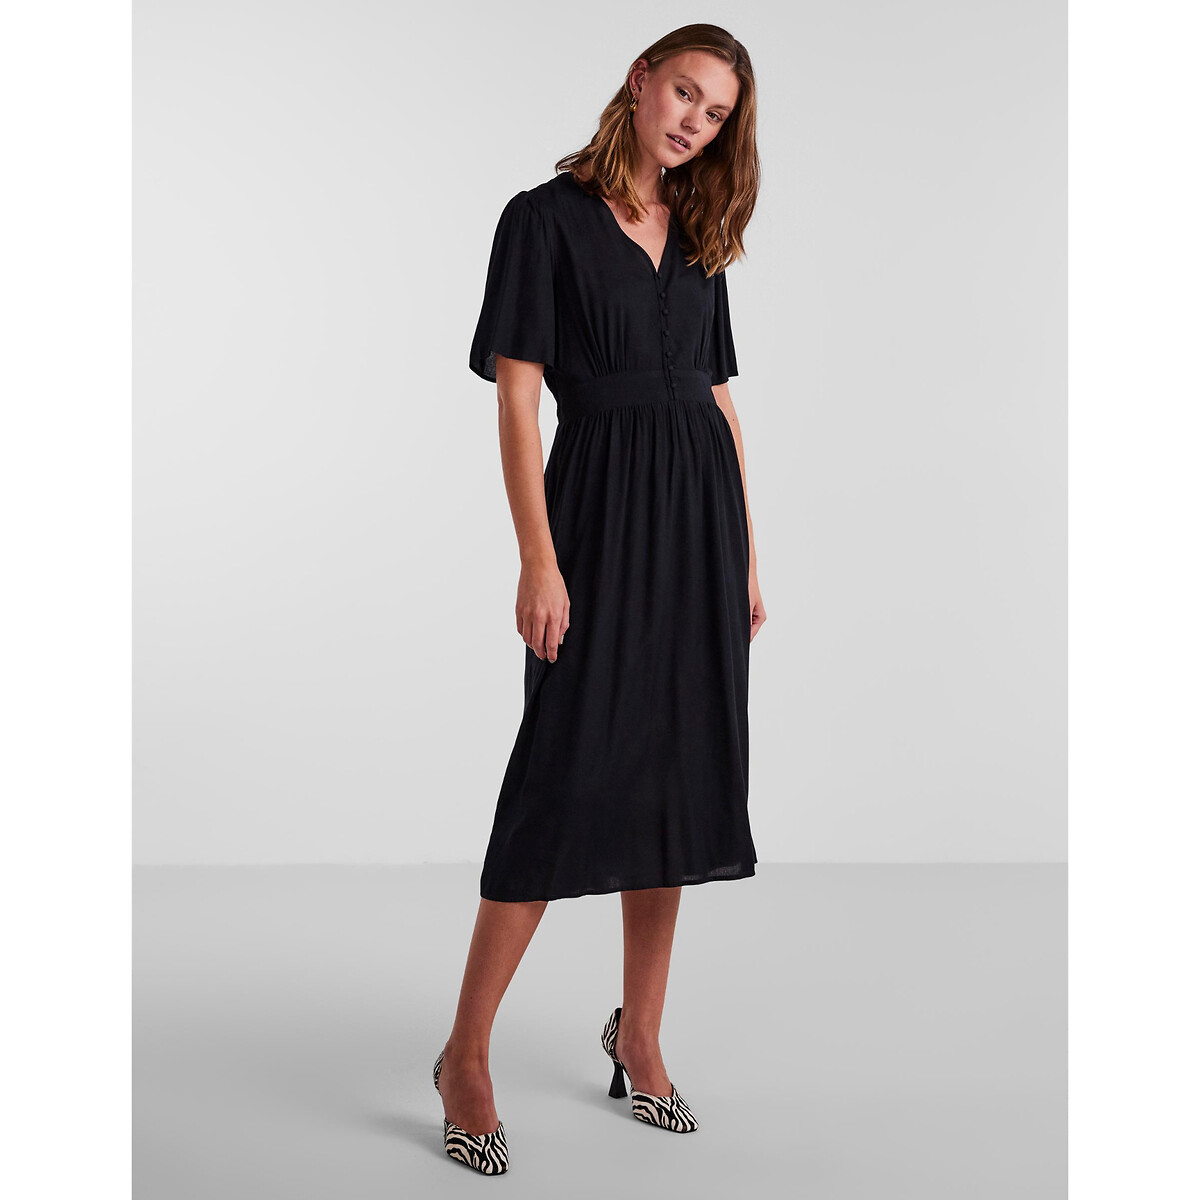 Платье Миди на пуговицах XL черный LaRedoute, размер XL - фото 3